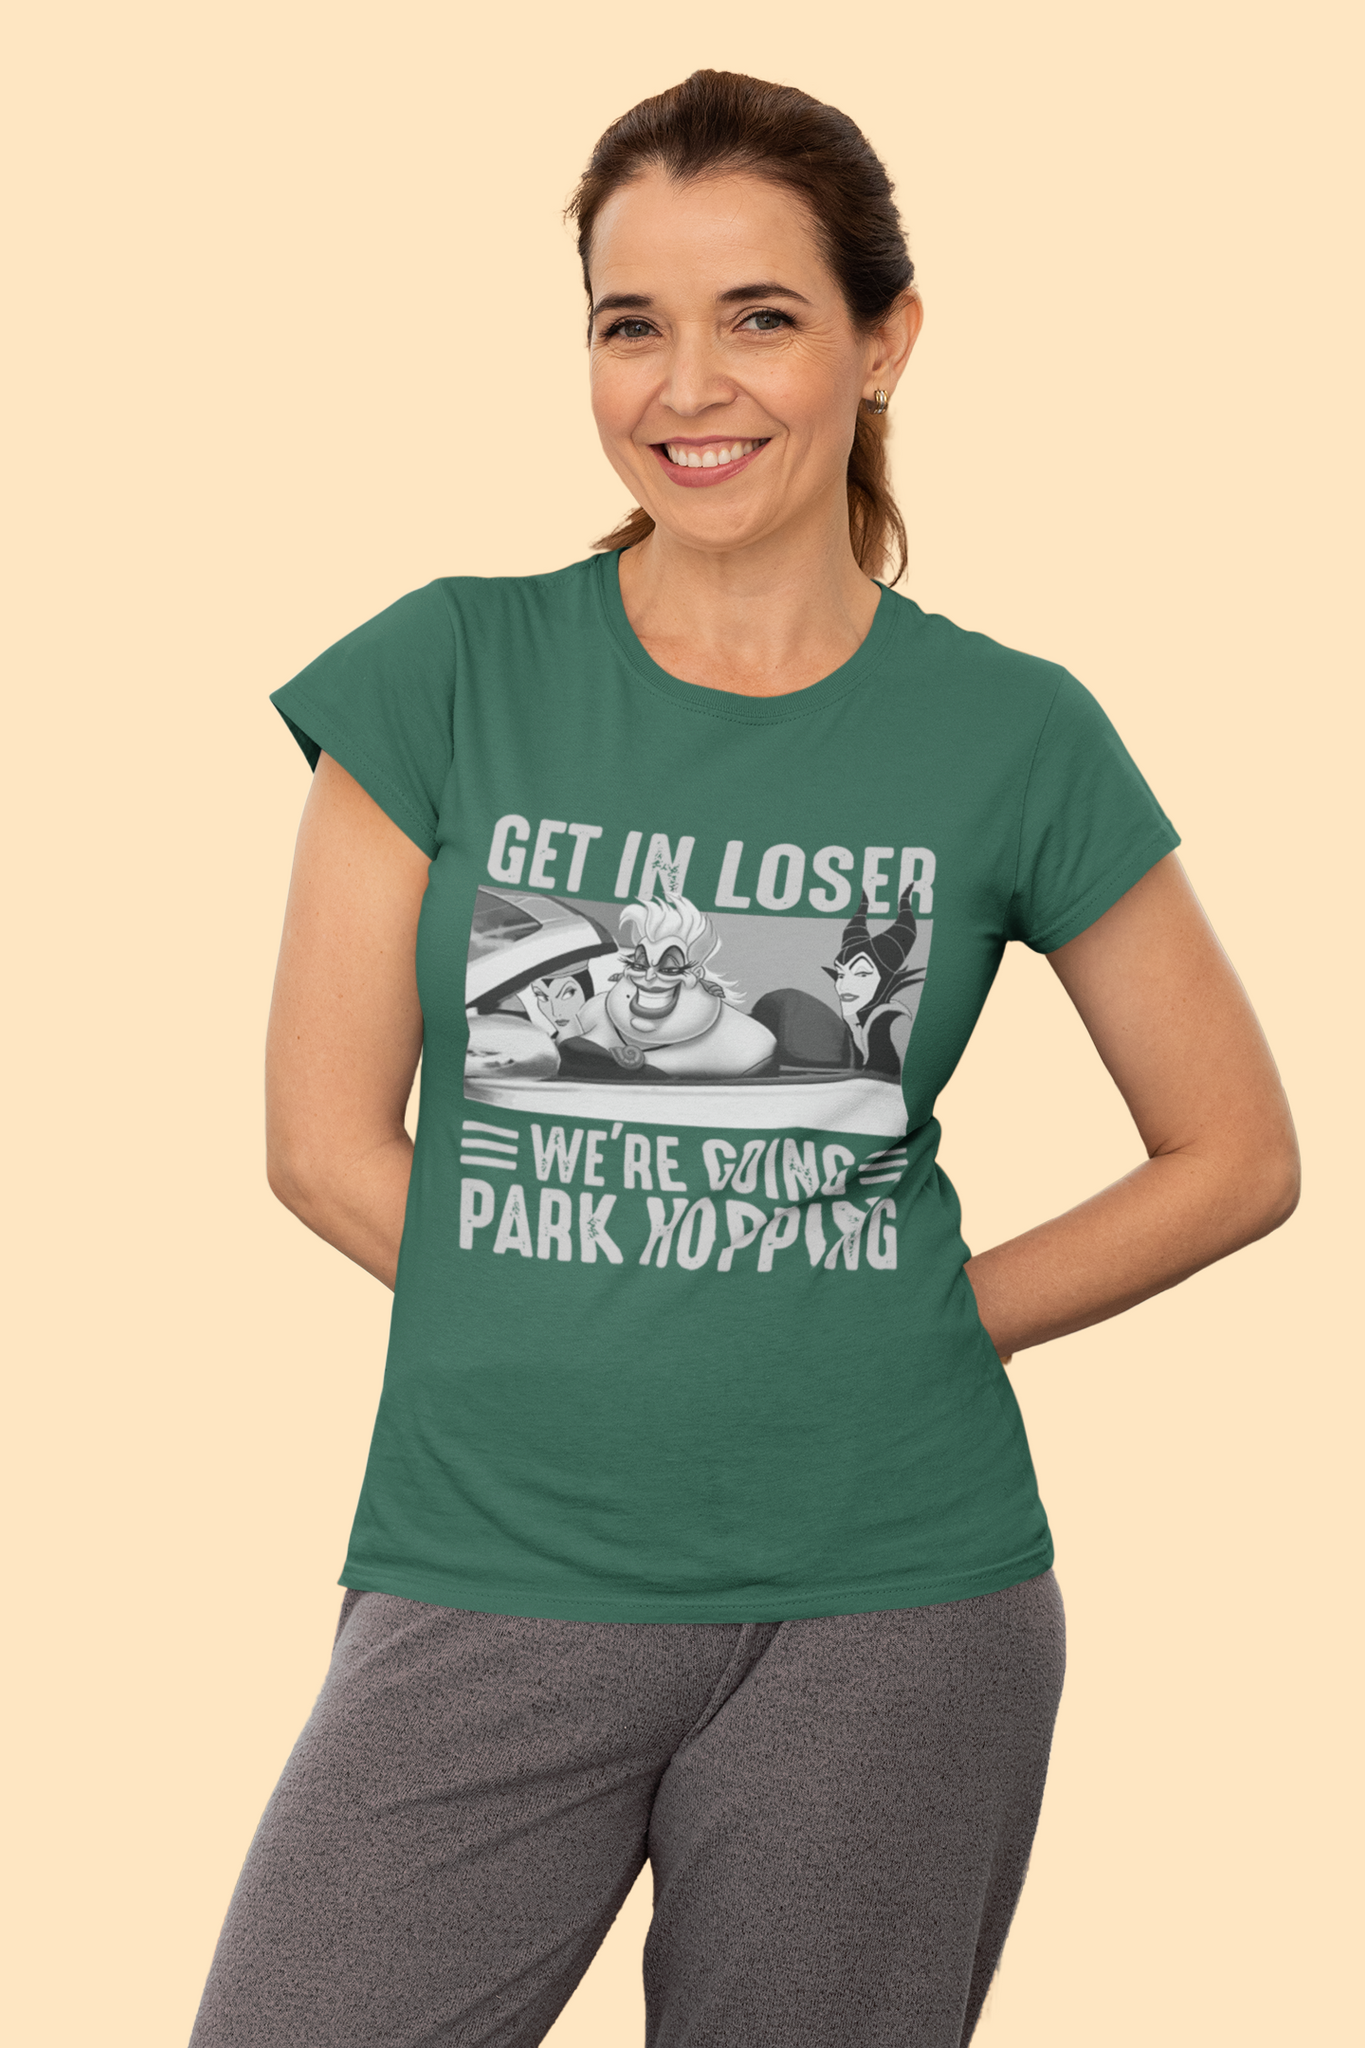 Disney Maleficent T Shirt, Disney Villains T Shirt, The Queen Ursula Maleficent Tshirt, Get In Loser Were Going Park Hopping Shirt